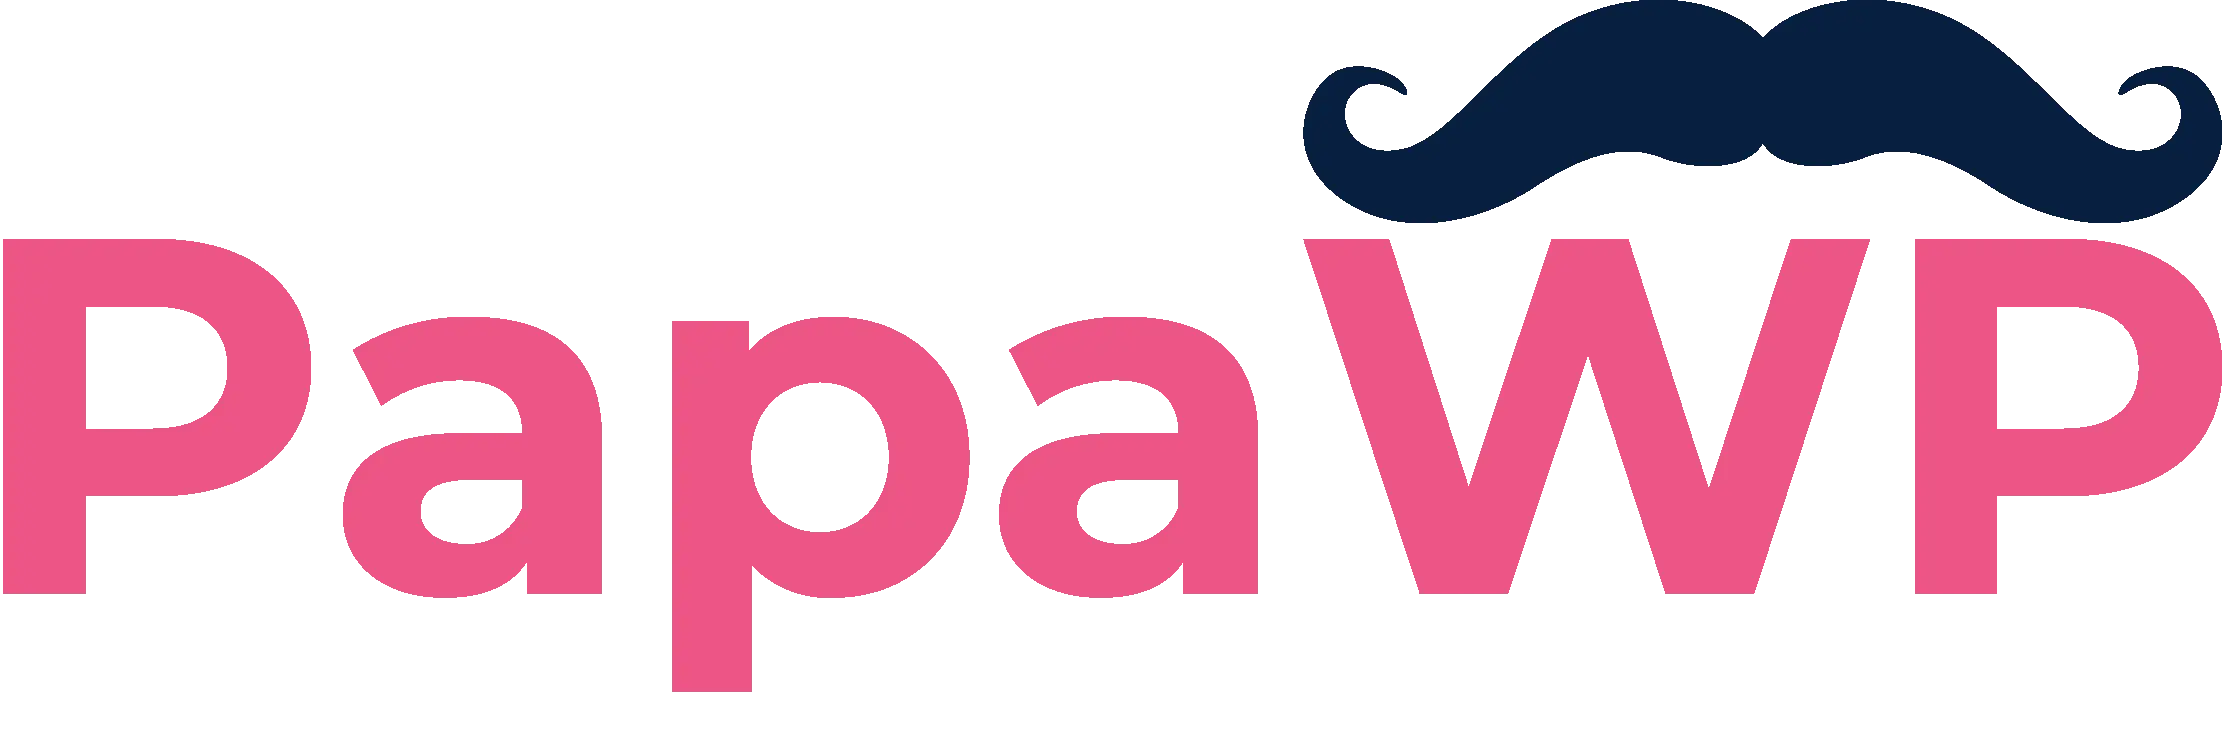 PapaWP